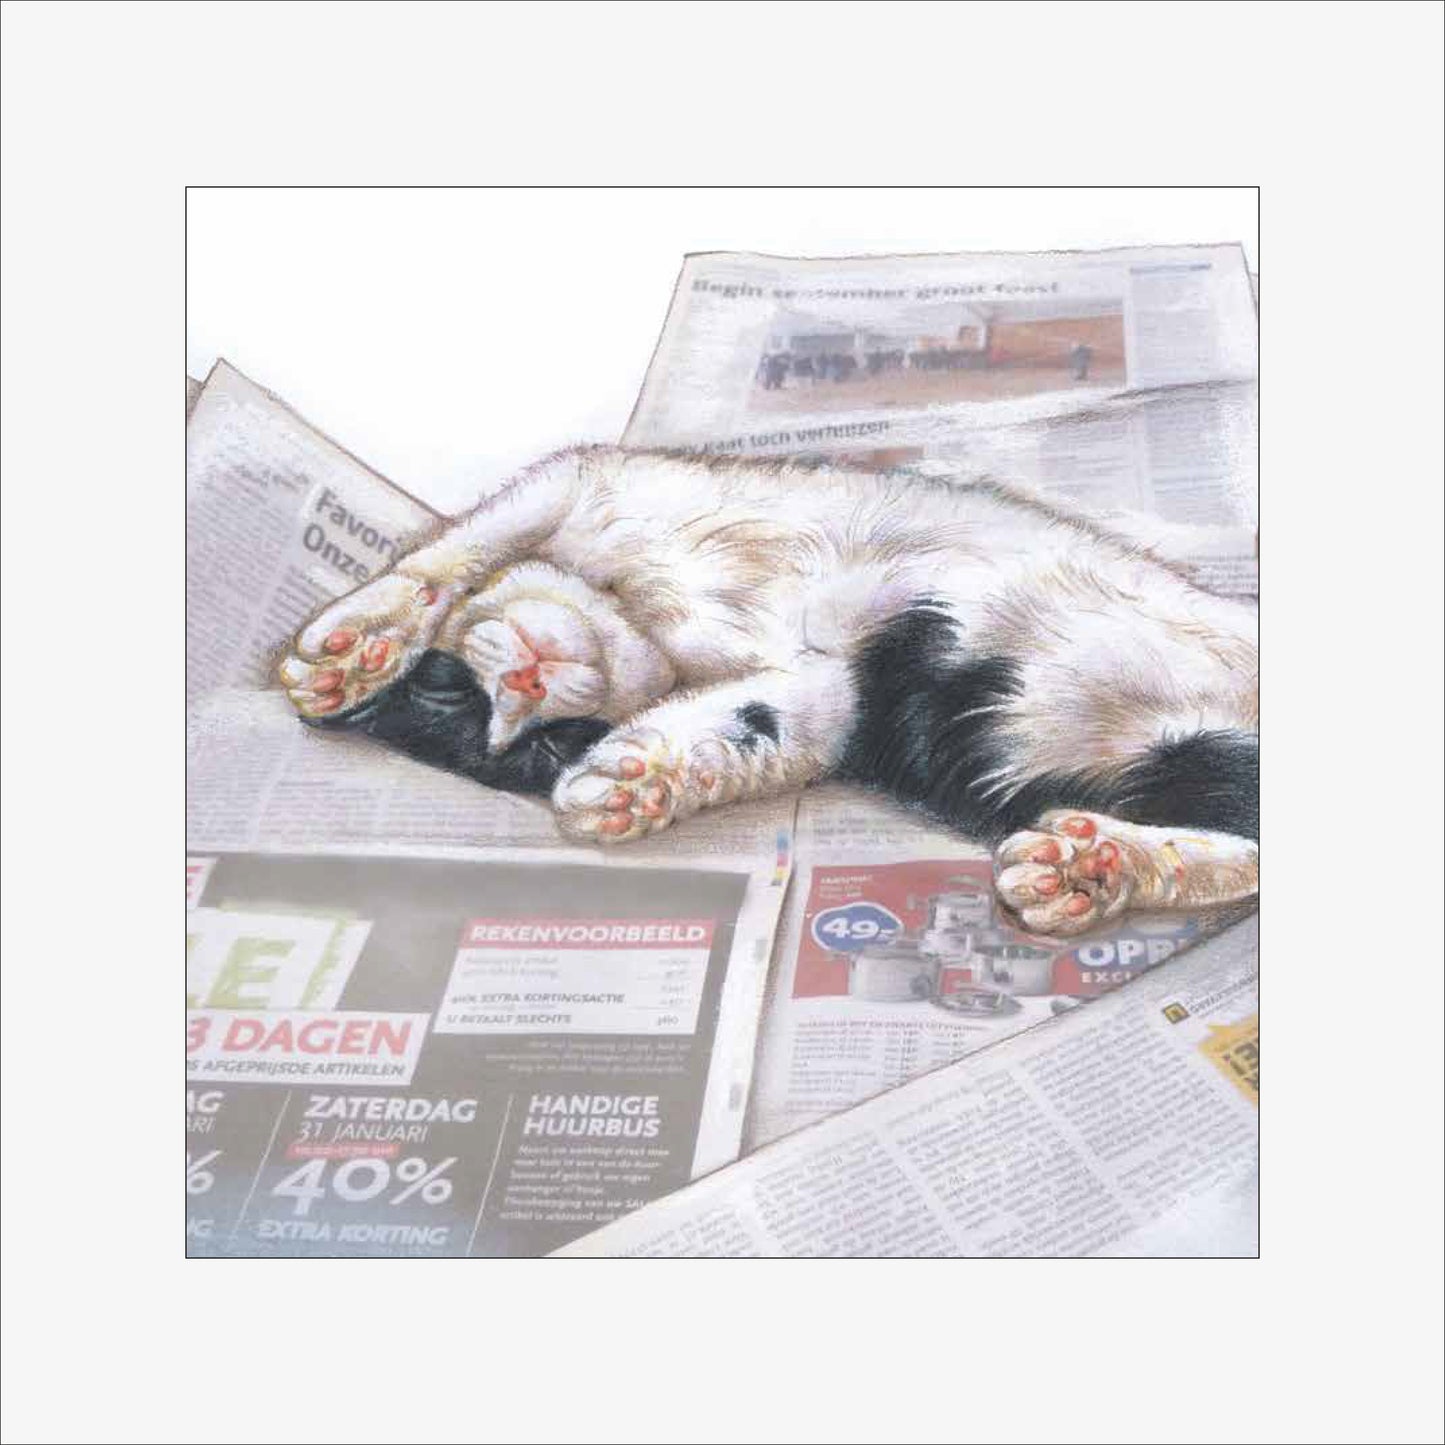 Reproduktion "Katze liest Zeitung".